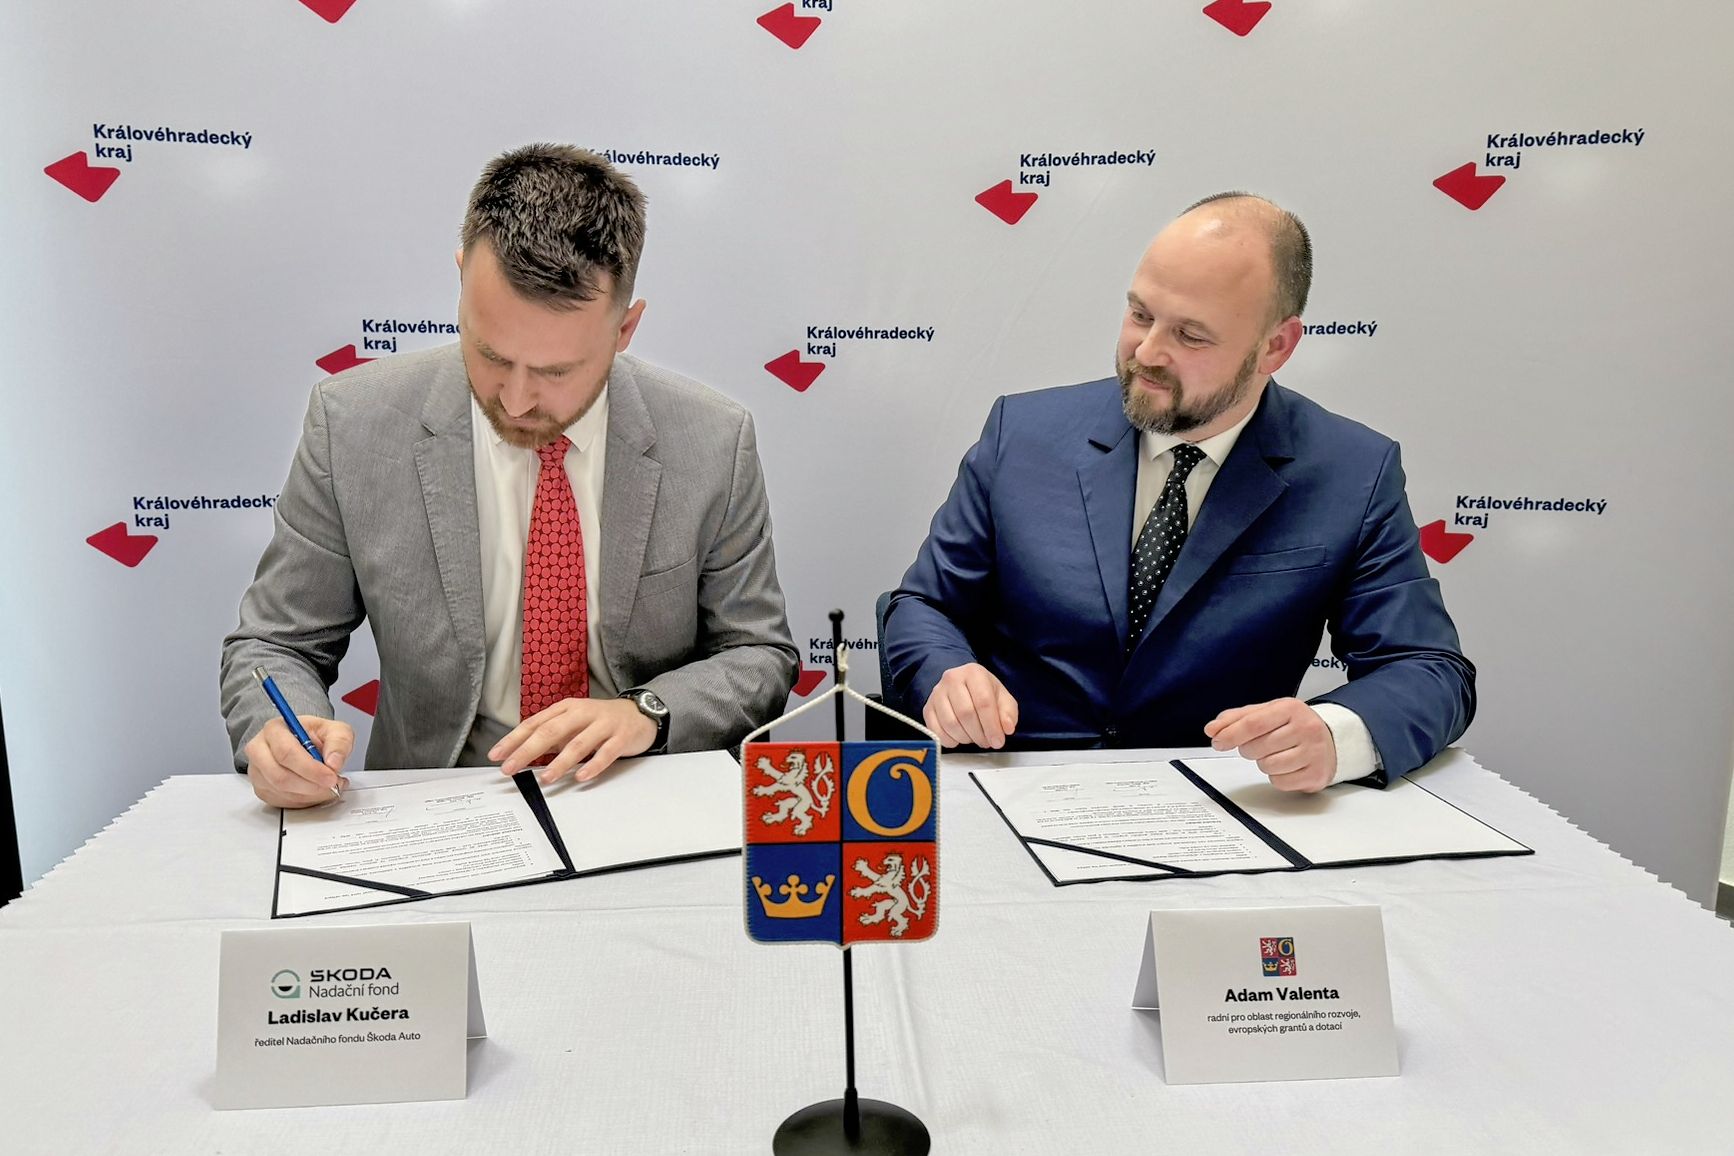 V regionu přibydou sdílená kola. Královéhradecký kraj a Nadační fond Škoda Auto podpoří udržitelnou mobilitu